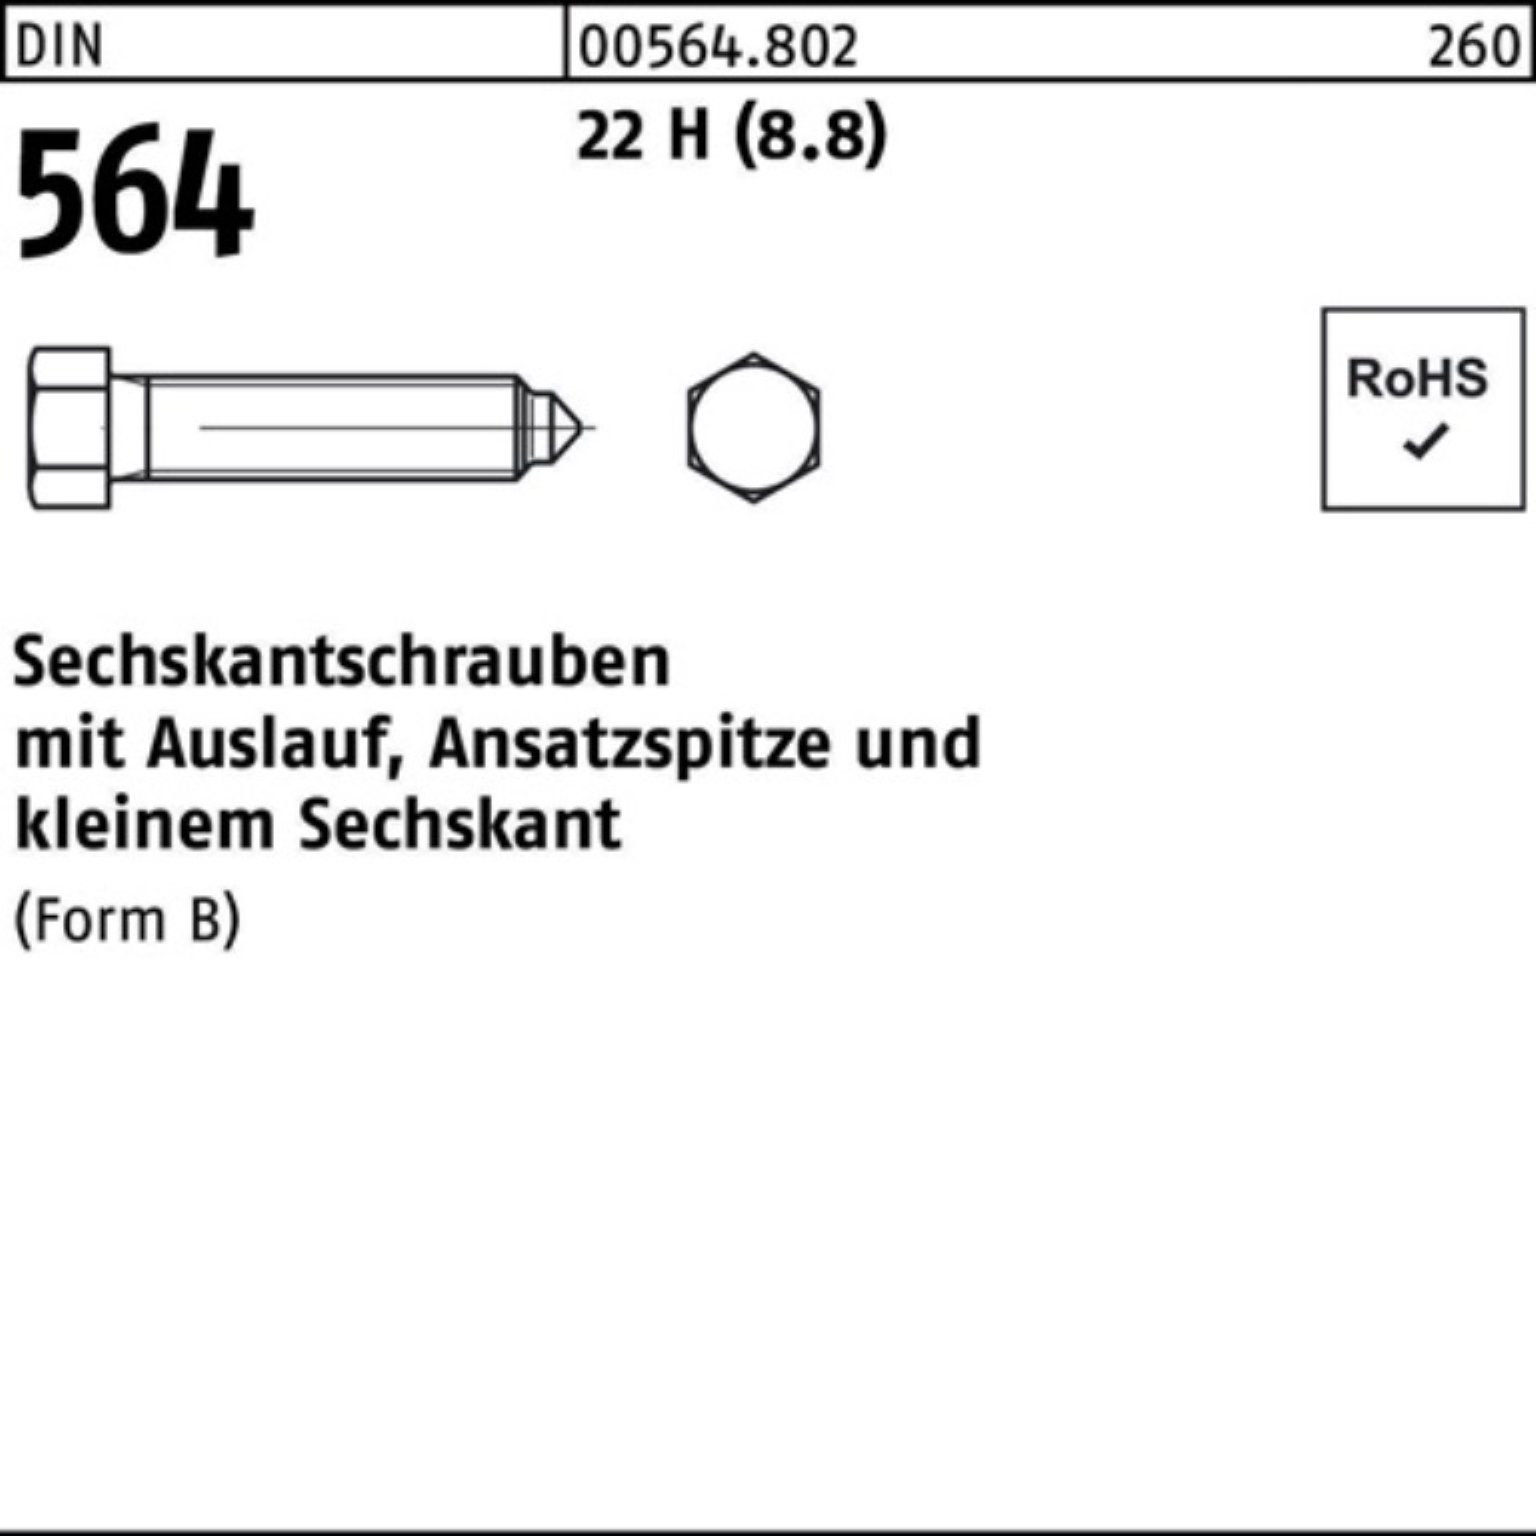 Reyher Sechskantschraube 100er Pack Sechskantschraube DIN 564 Ansatzspitze/Auslauf BM 12x 40 22